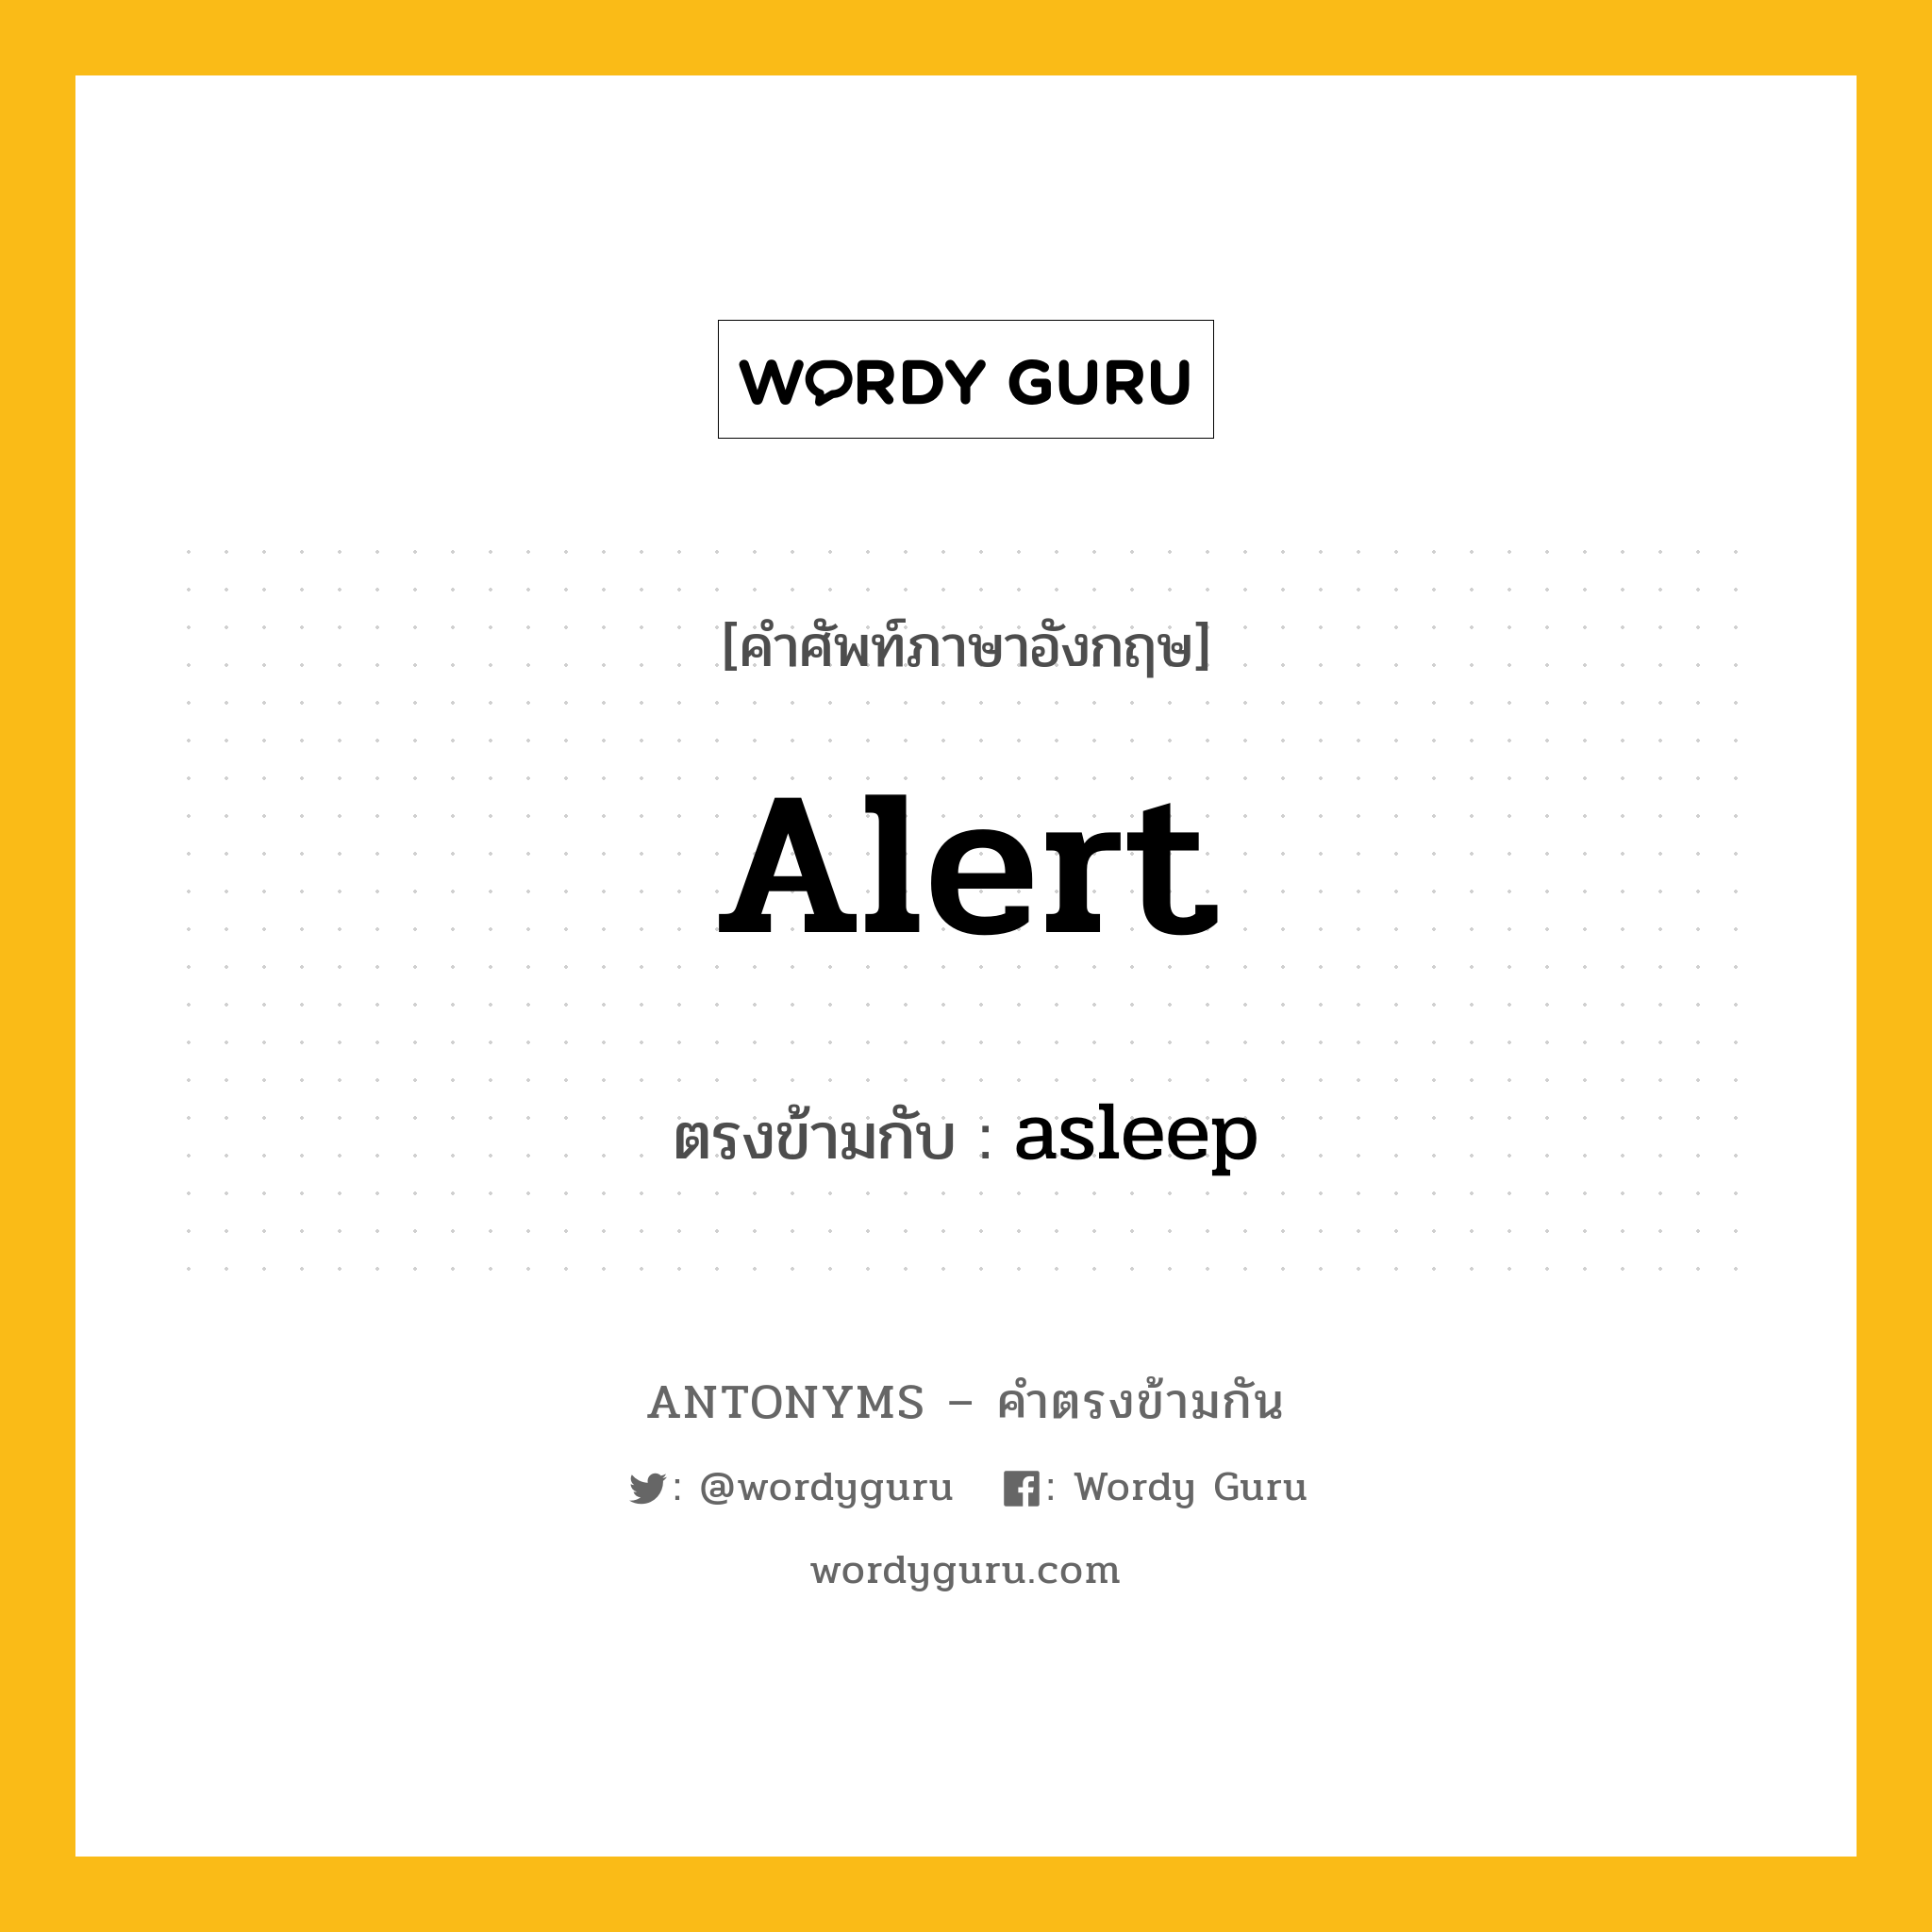 alert เป็นคำตรงข้ามกับคำไหนบ้าง?, คำศัพท์ภาษาอังกฤษ alert ตรงข้ามกับ asleep หมวด asleep